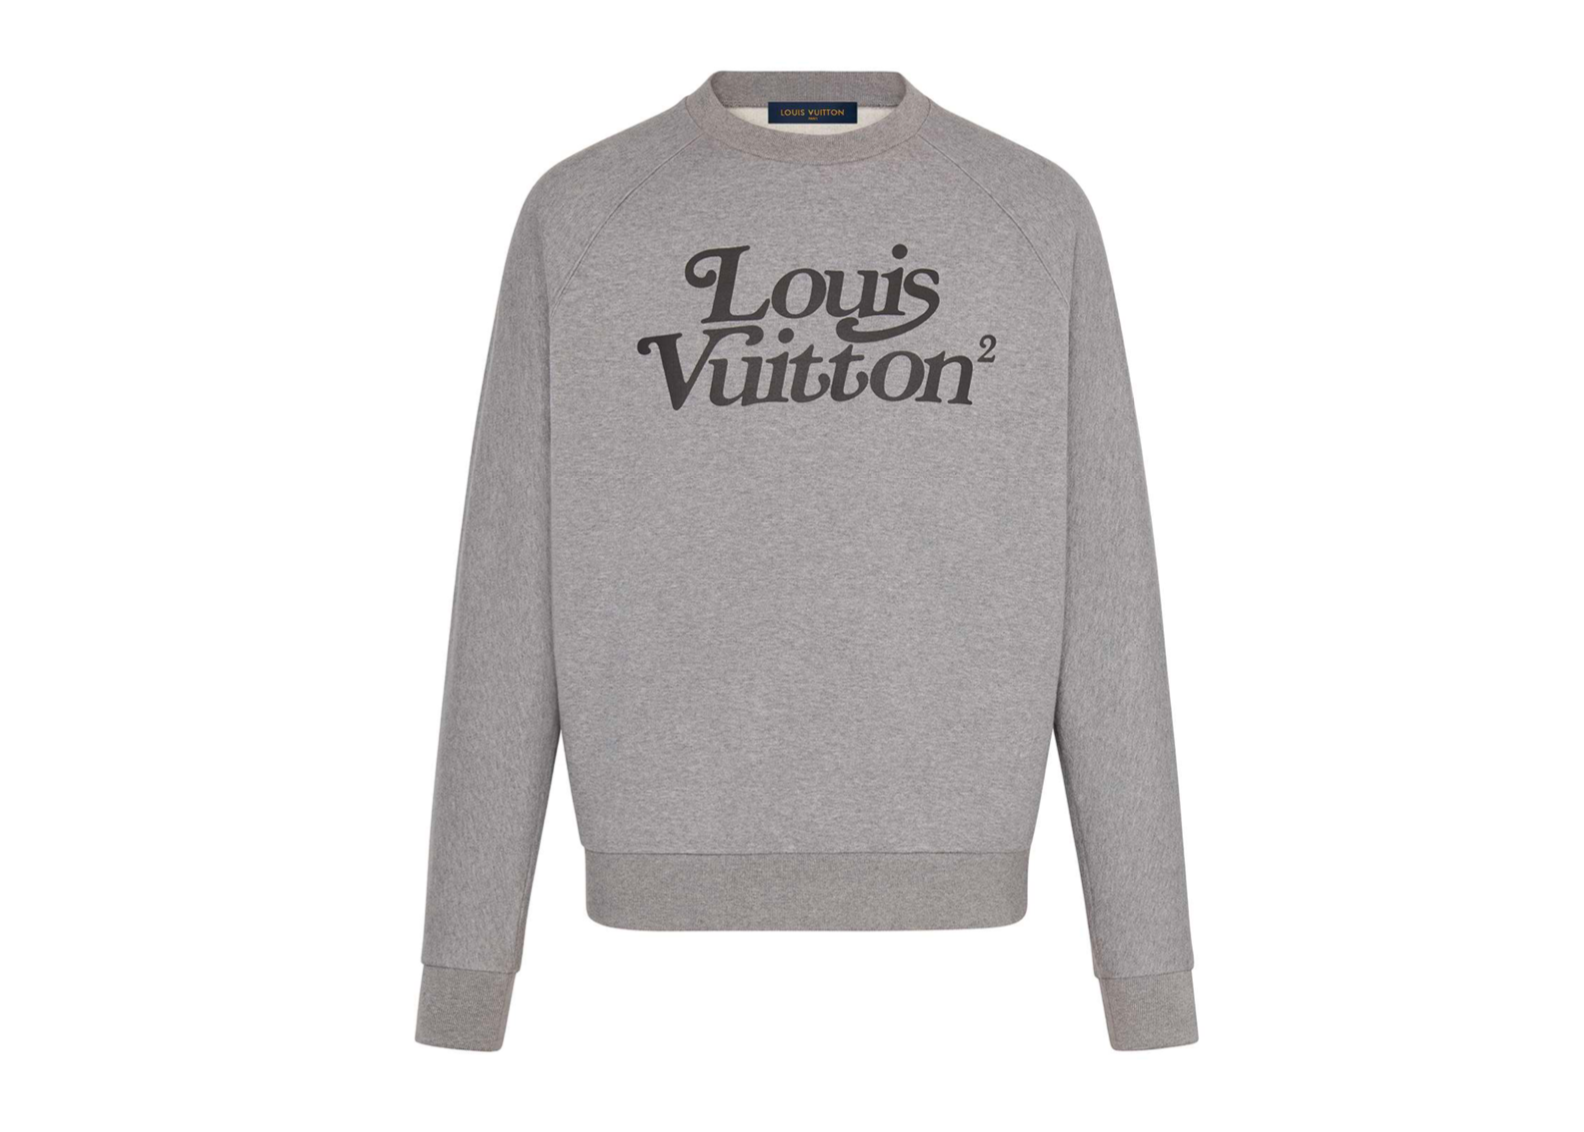 Louis Vuitton Logo Vector 2  Brands Logos